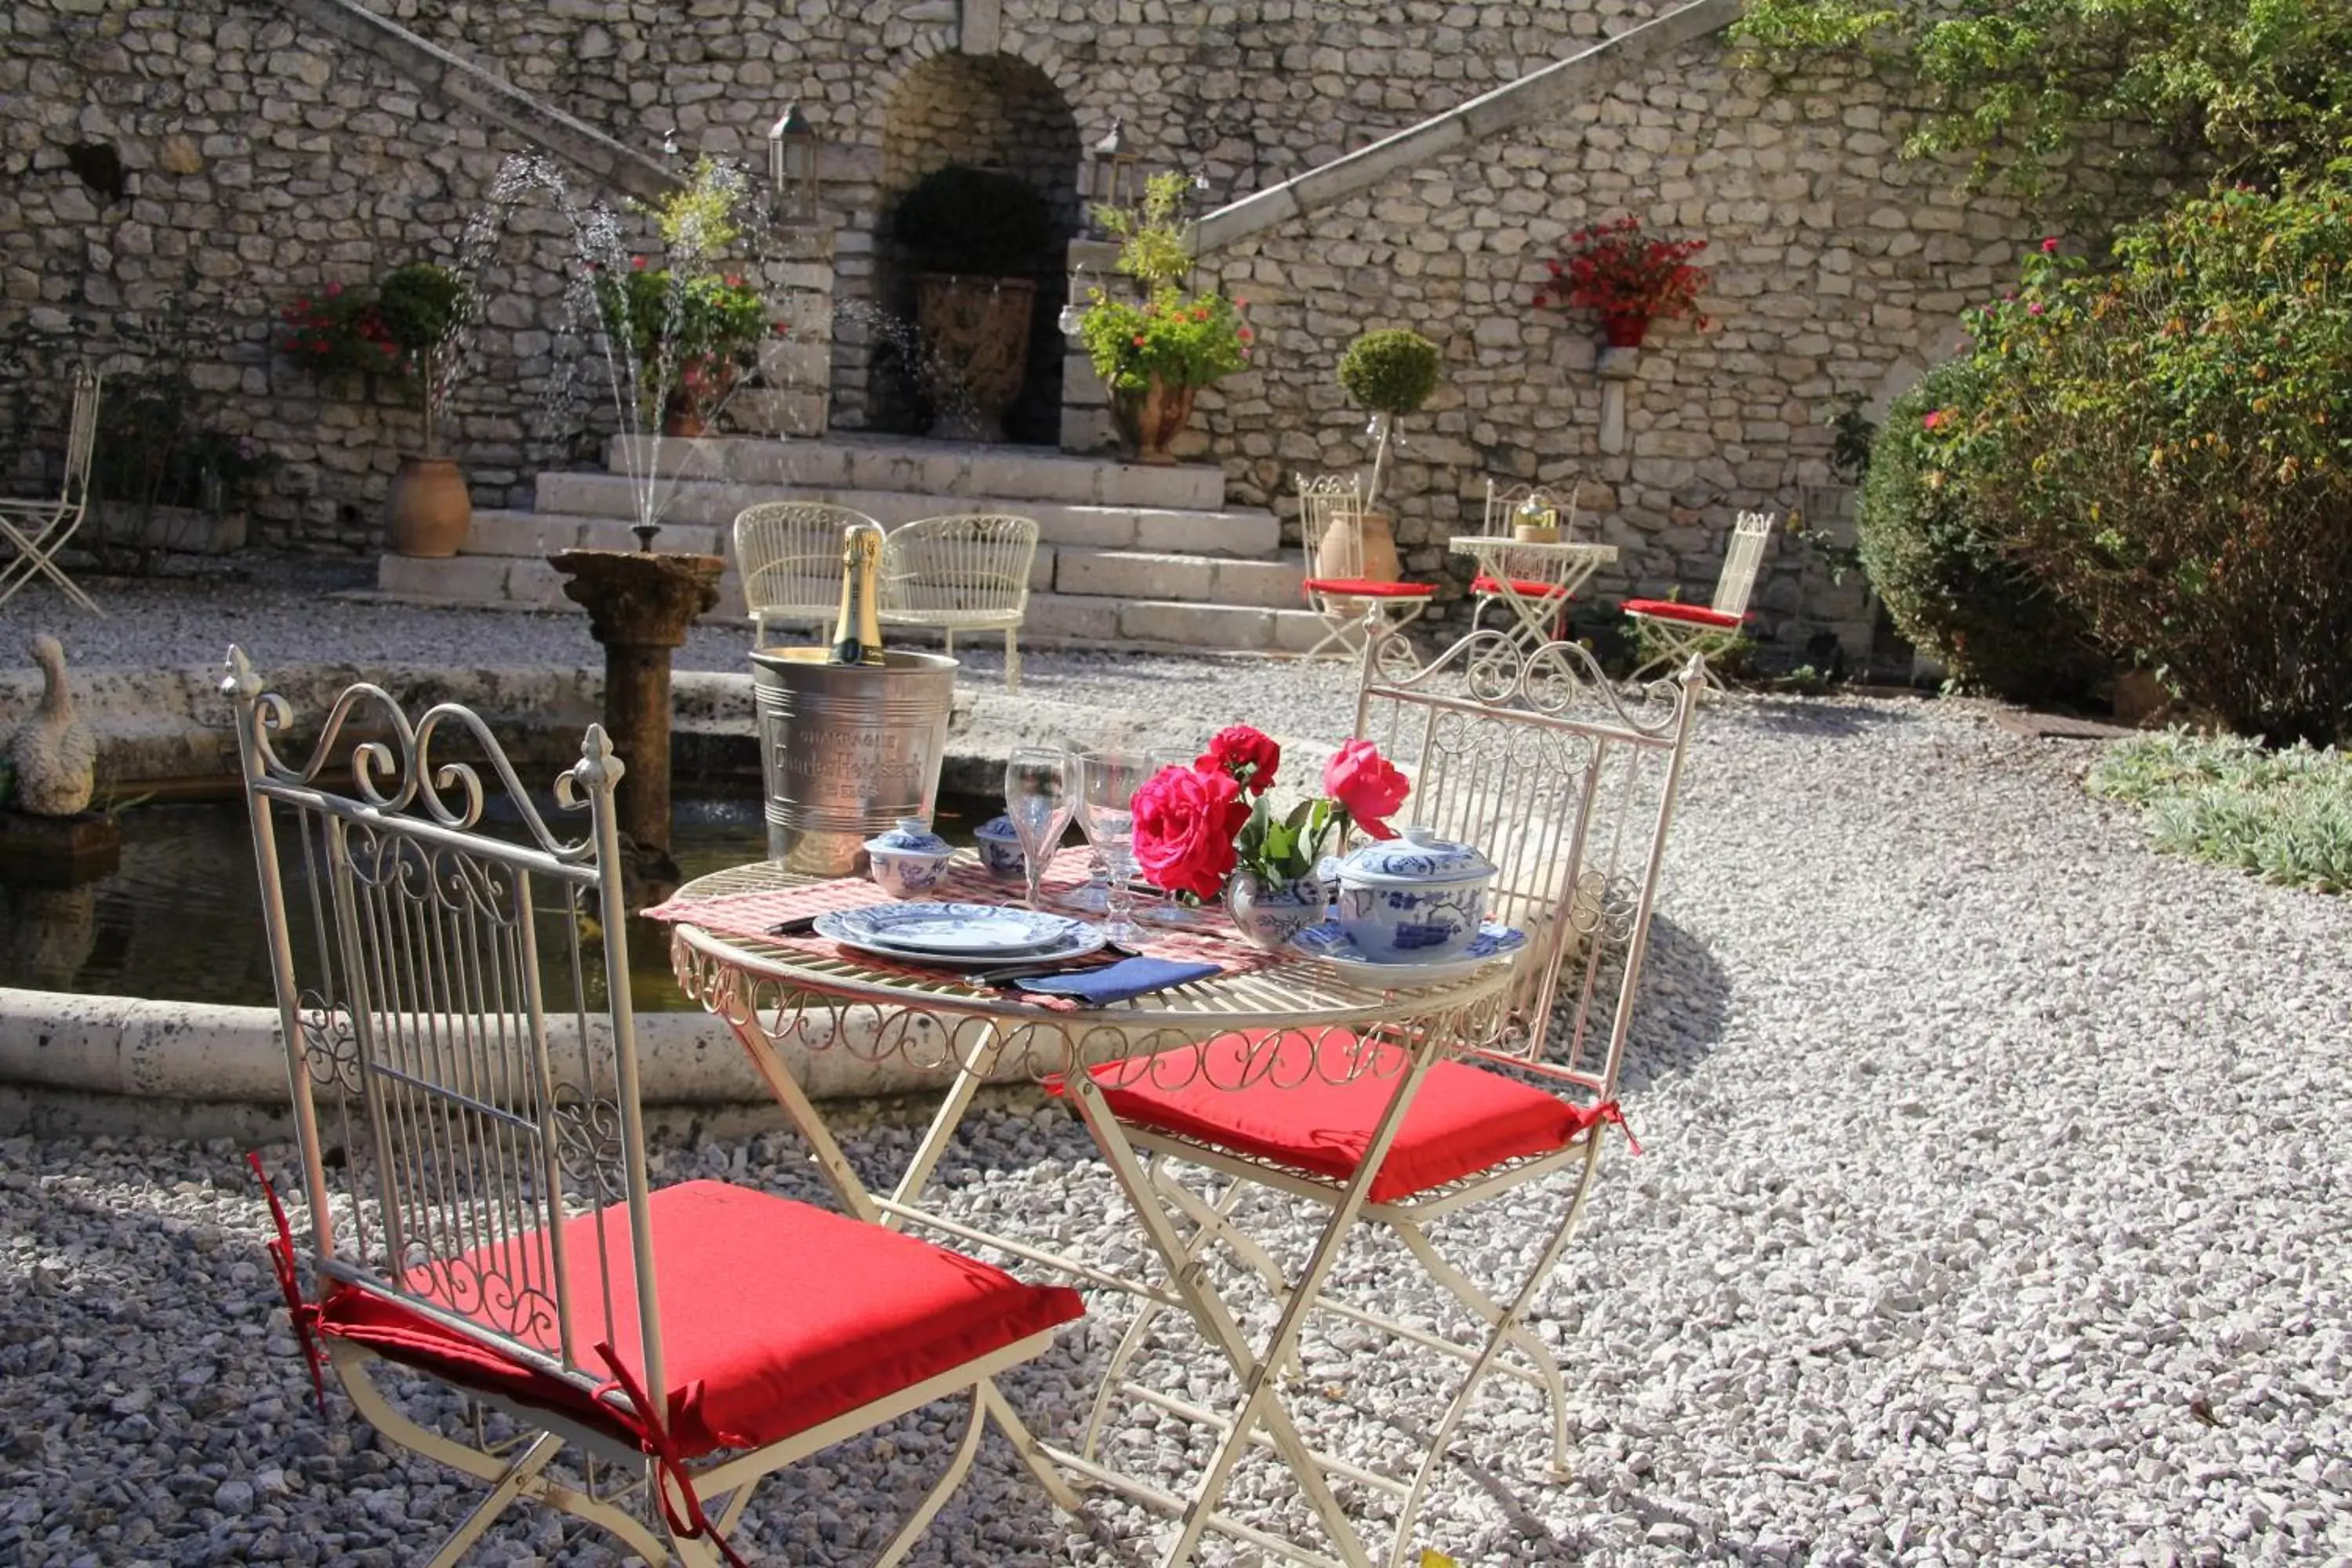 Restaurant/places to eat in Demeure des Vieux Bains